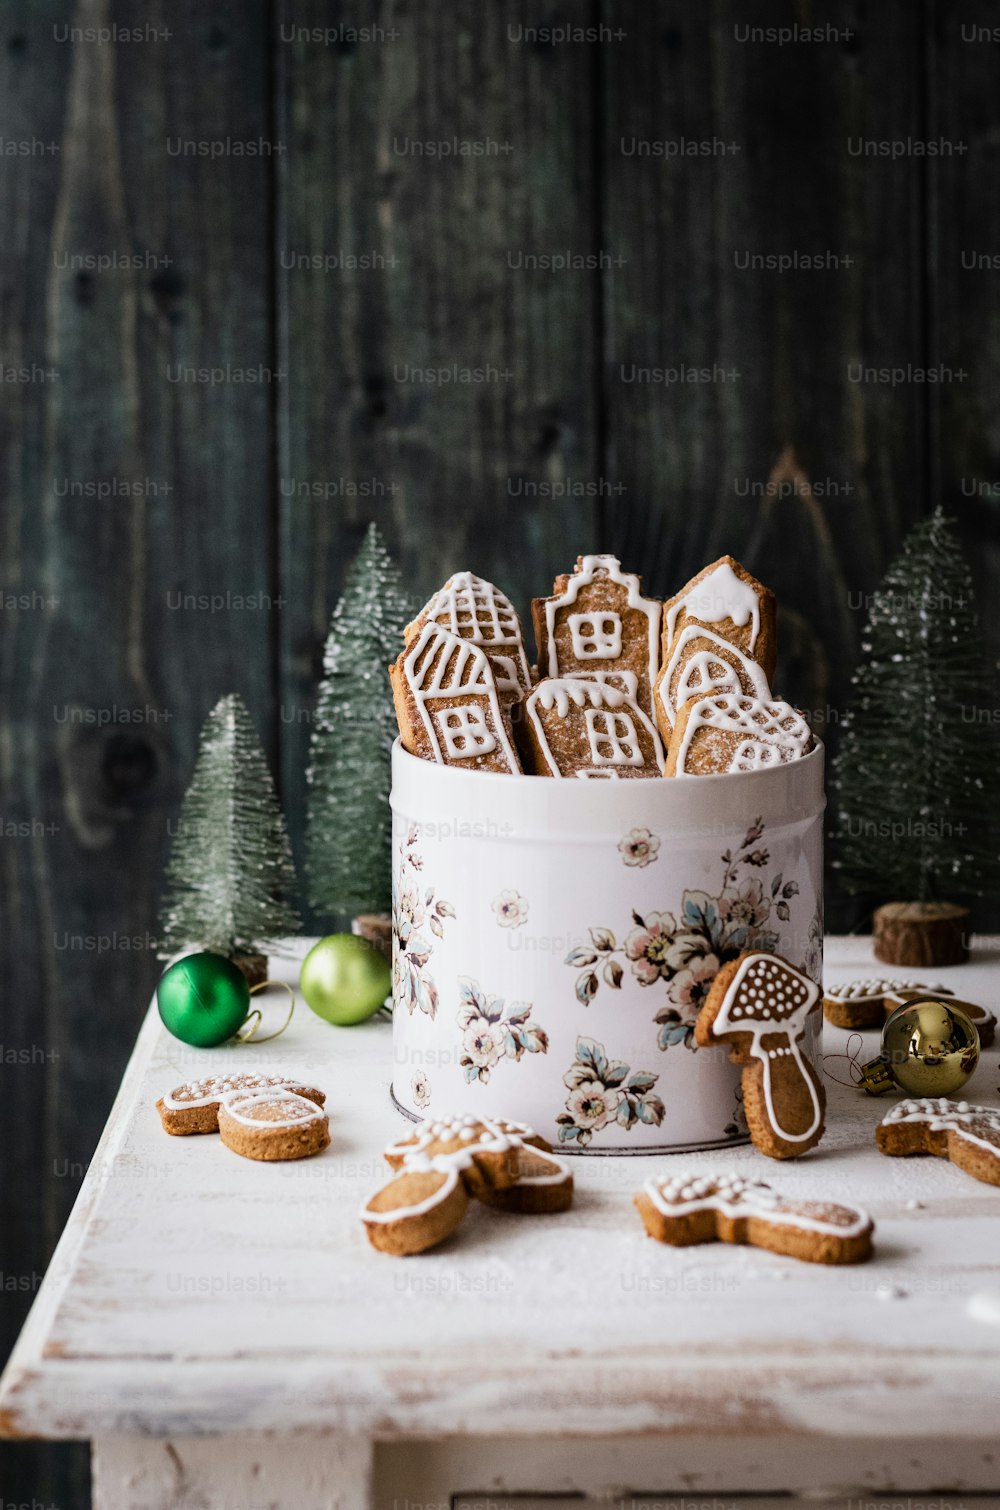 Un pastel decorado con galletas de jengibre y adornos navideños